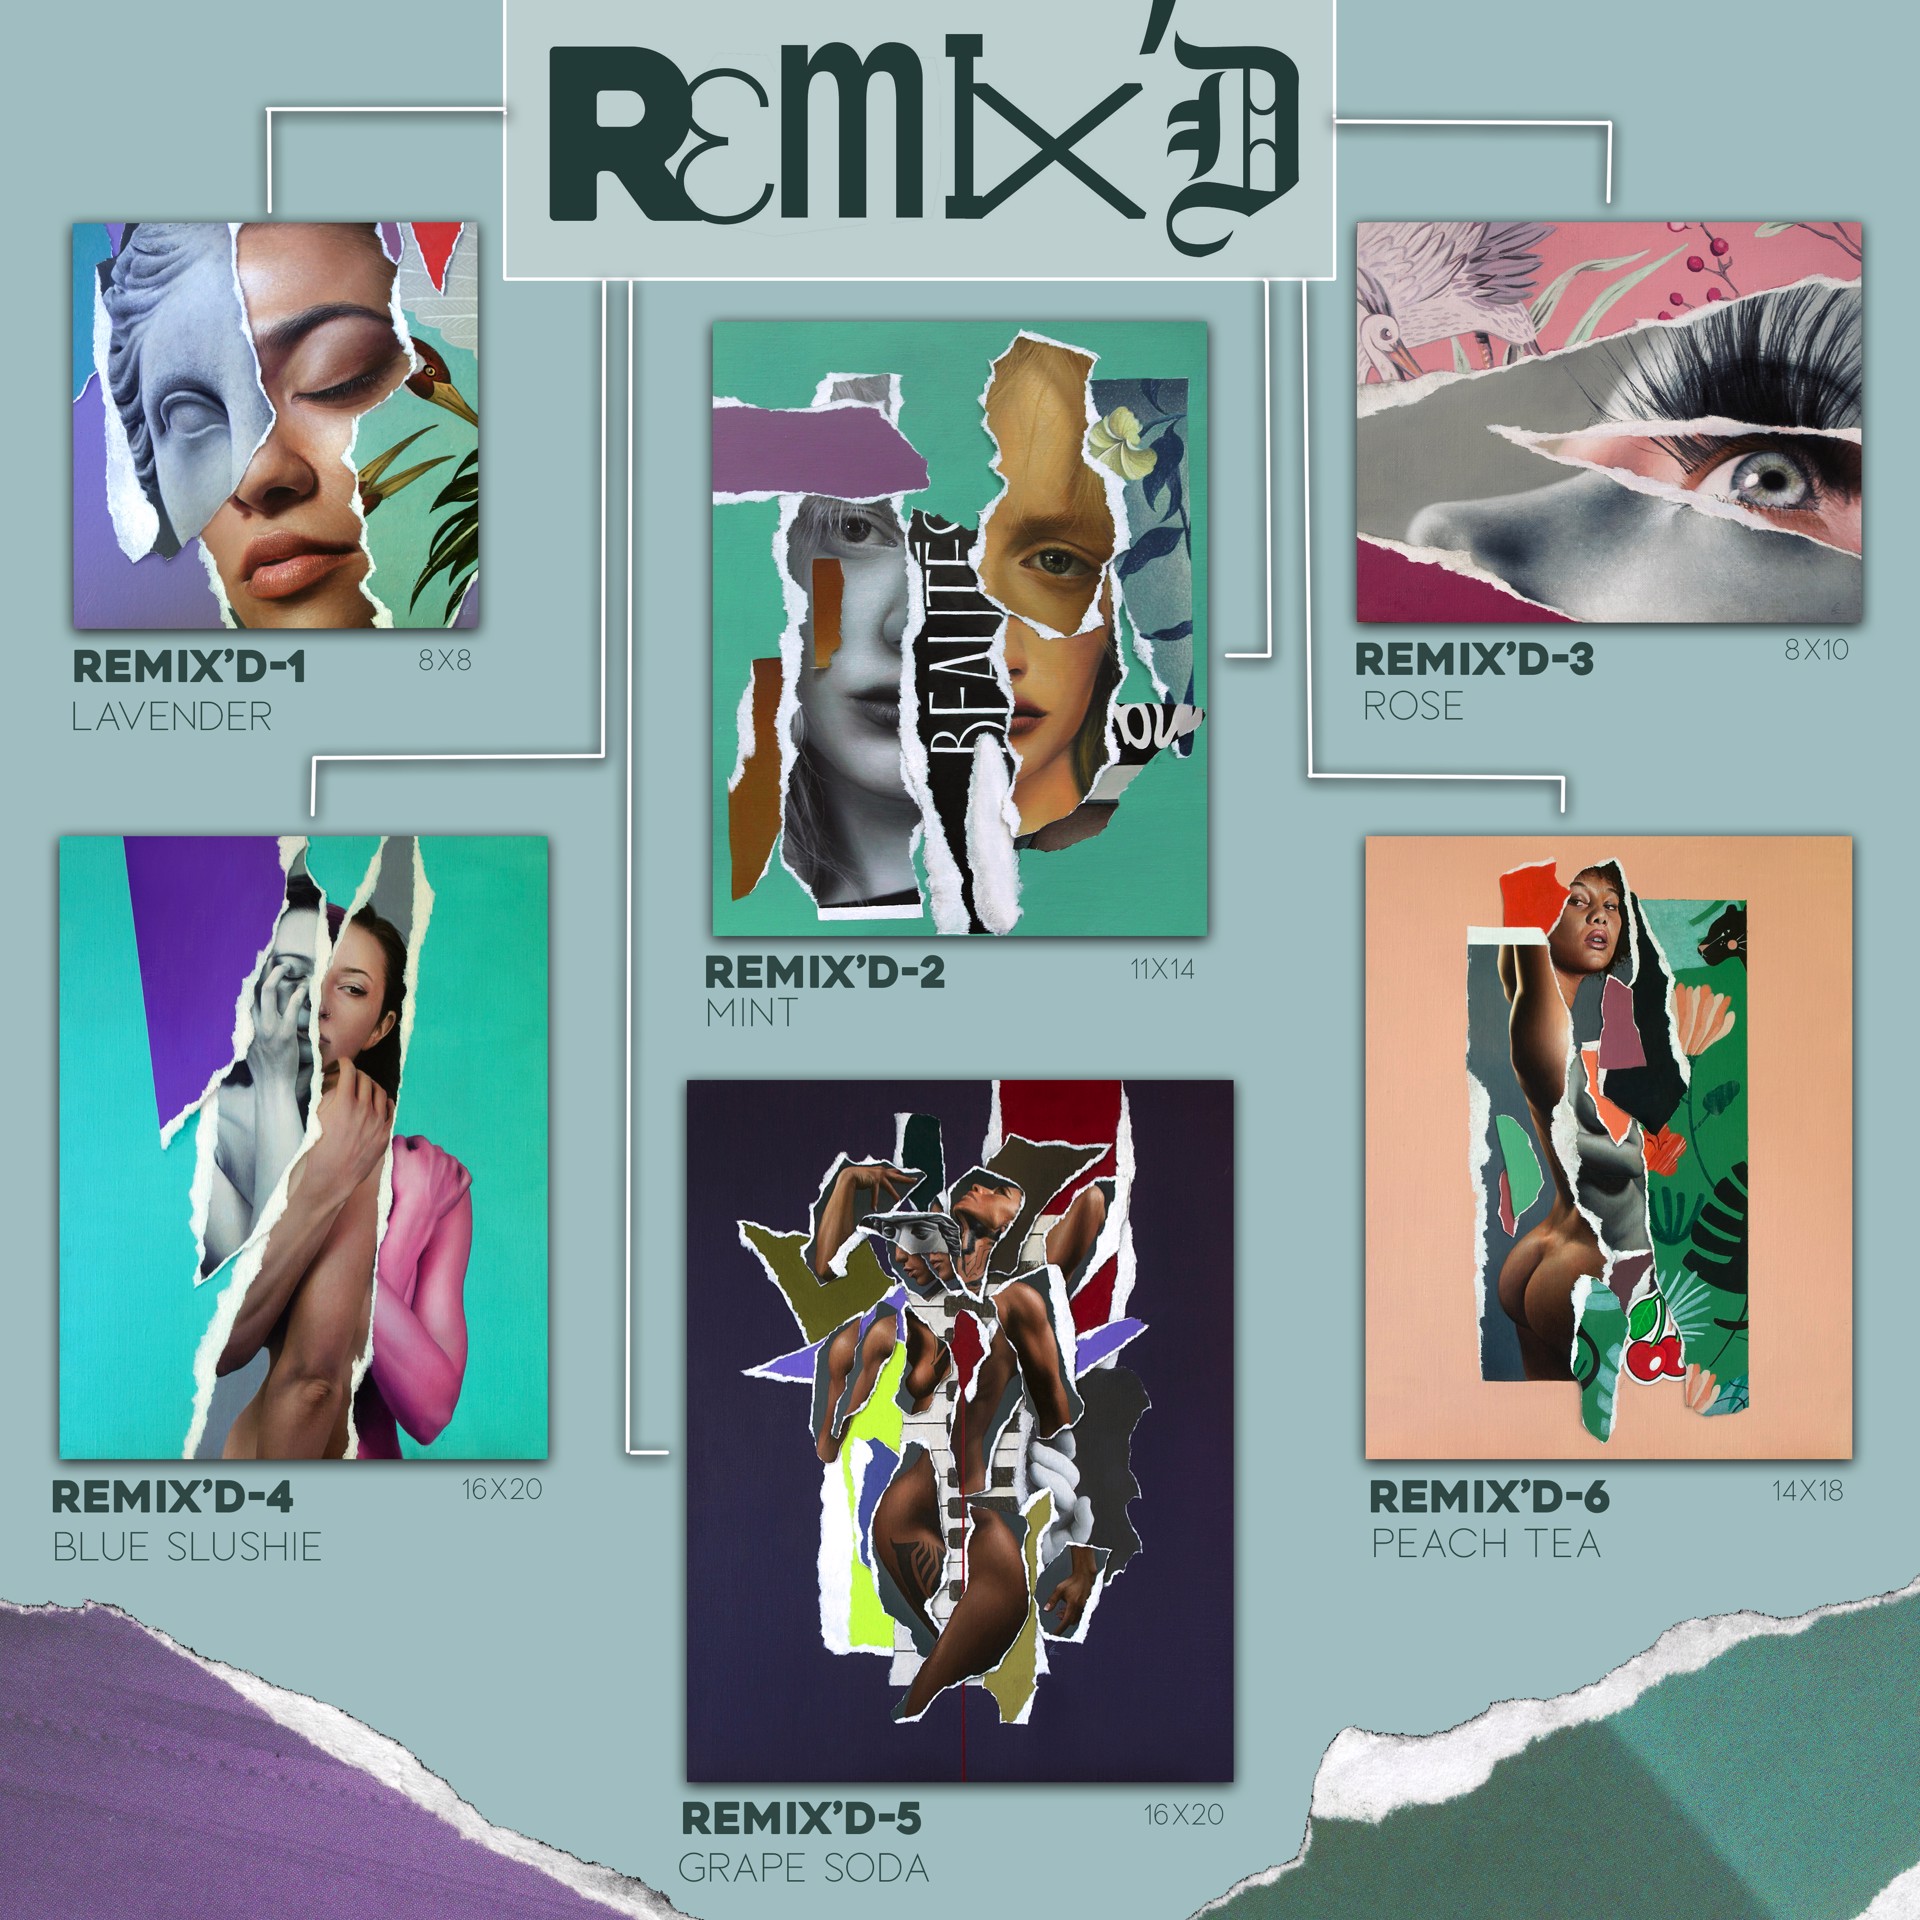 Remix’D-1 (Lavender) by Grant Gilsdorf